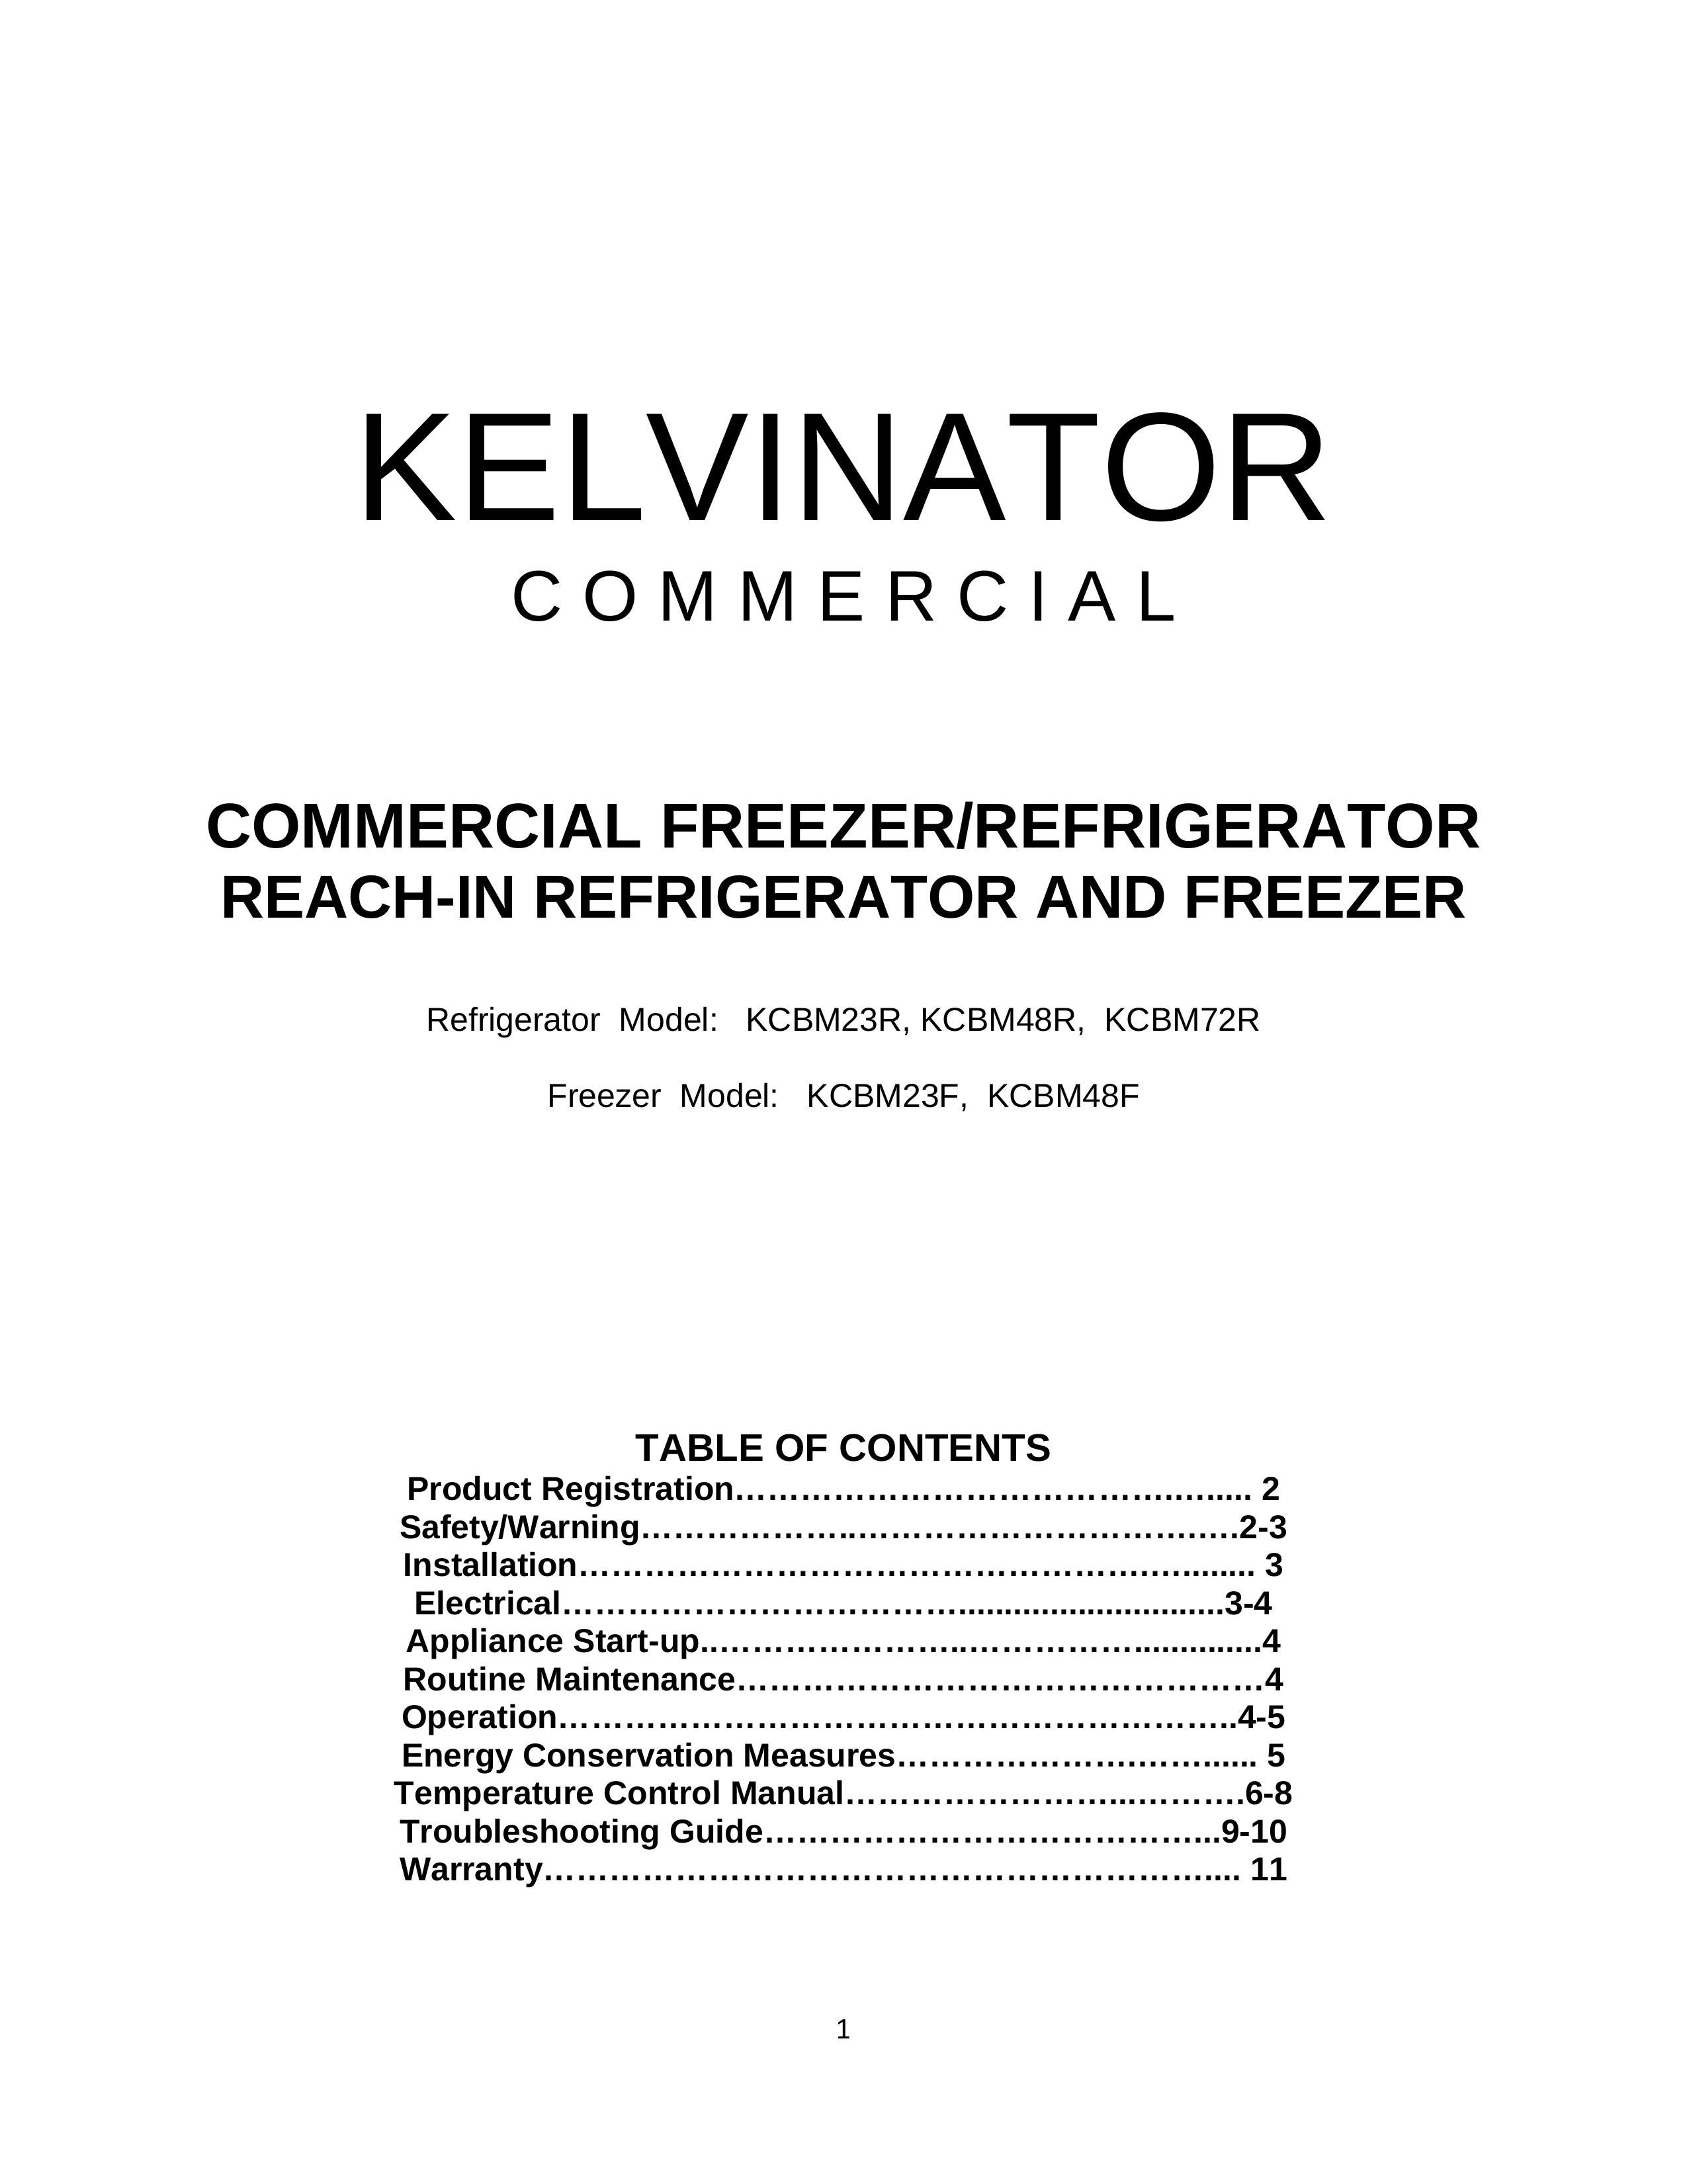 Kelvinator KCBM48R Refrigerator User Manual